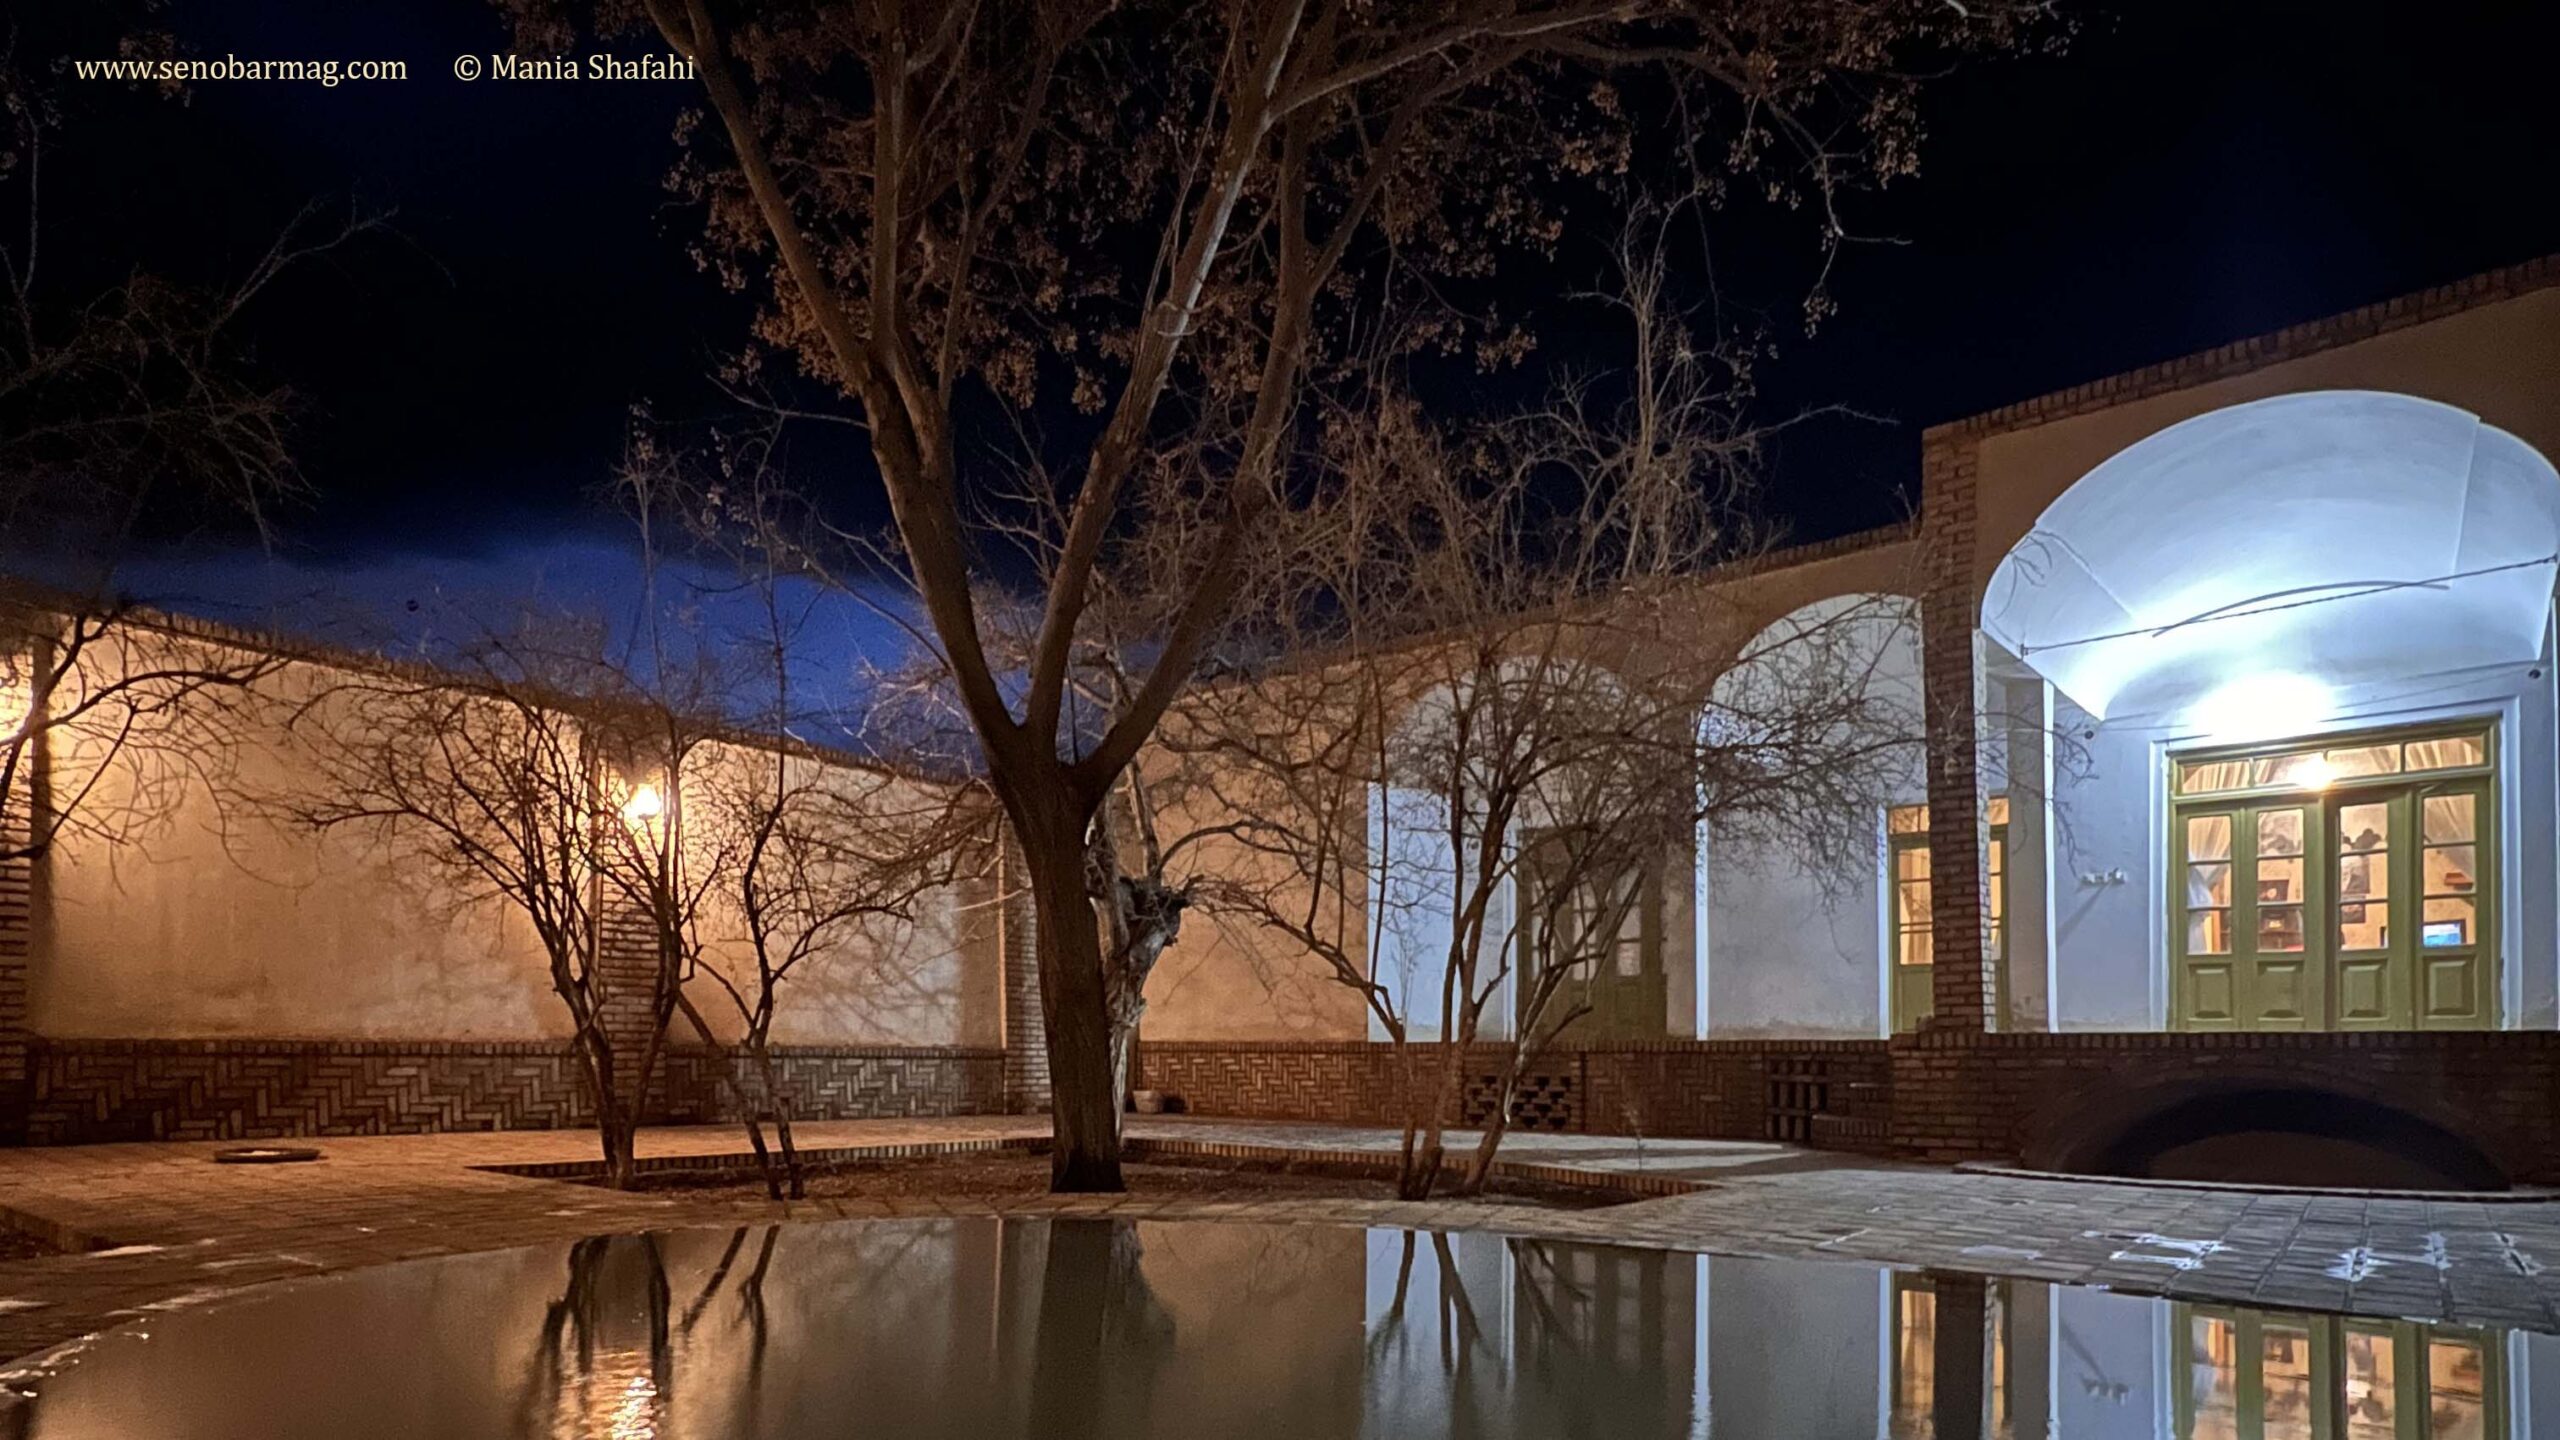 معماری بیابان در تمام مناطق کویری ایران شبیه به هم است